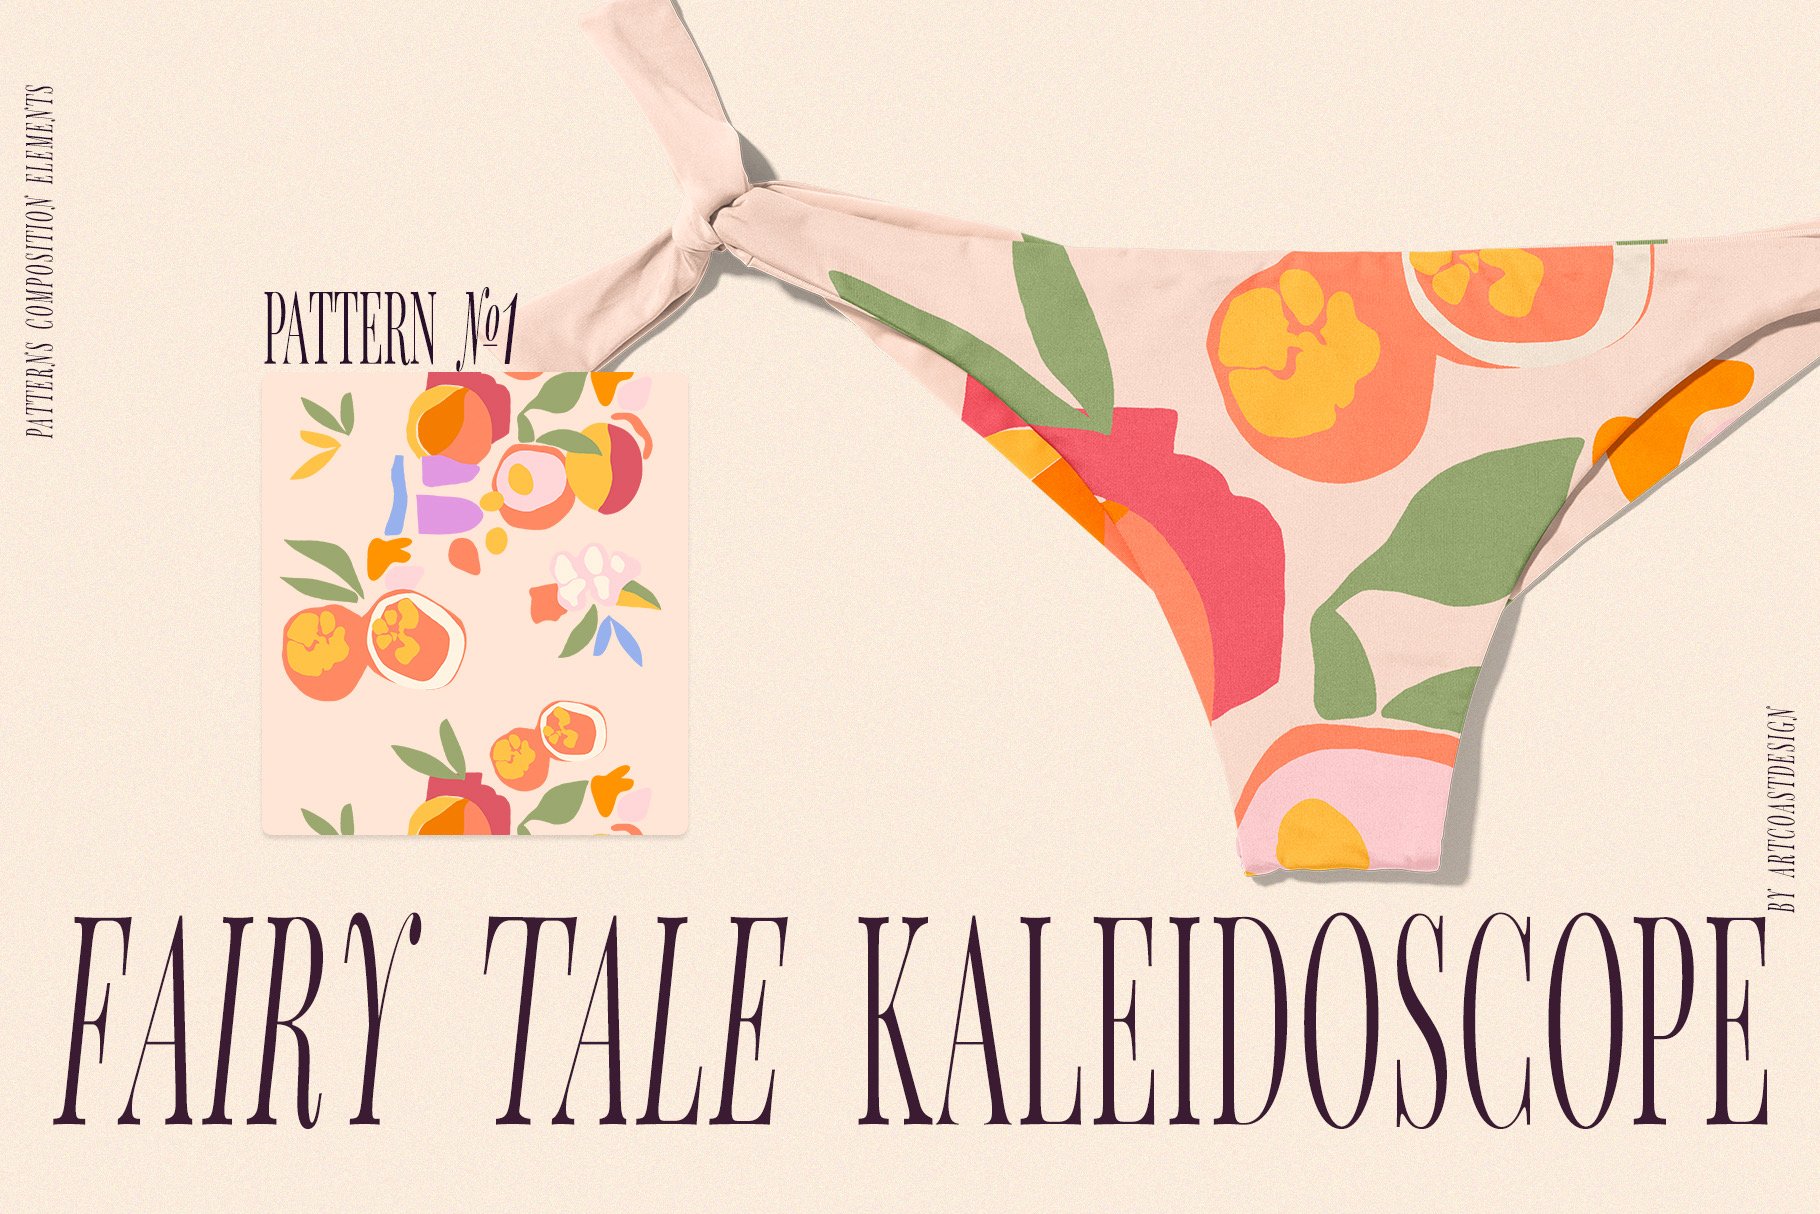 Fairy-Tale-Kaleidoscope-Vector-Art-Patterns-9.jpeg